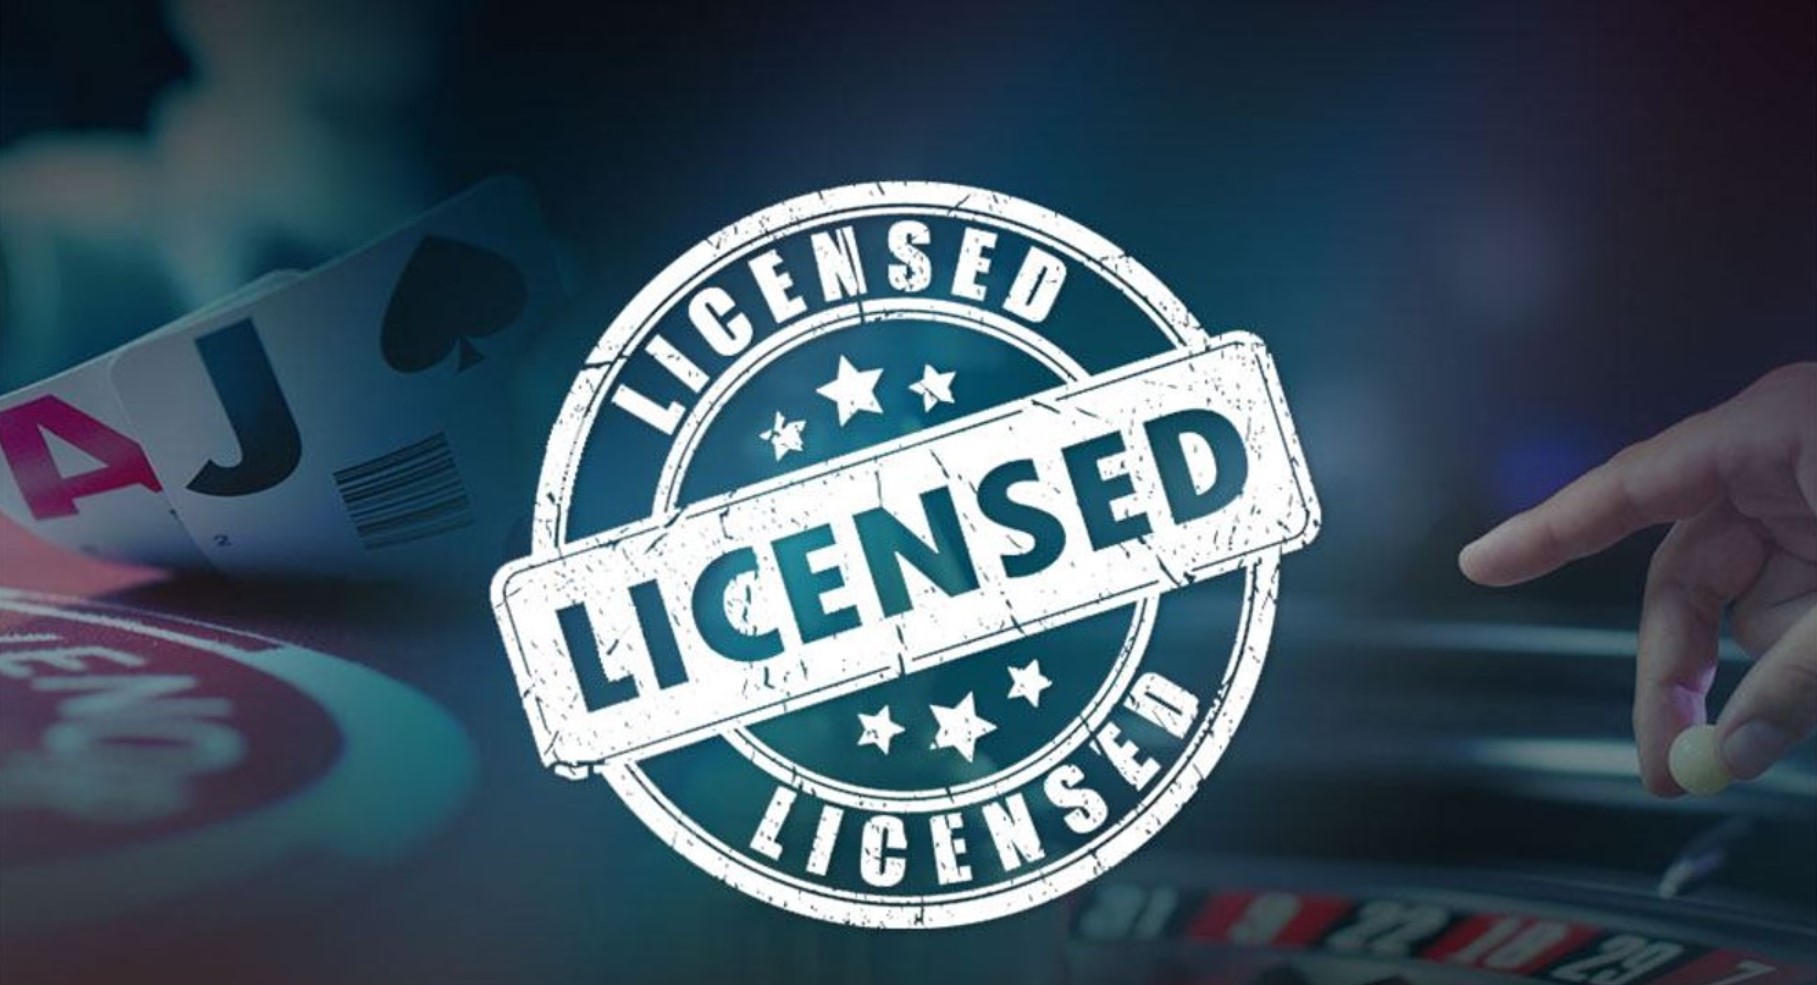 Game license. Казино с лицензией. Лицензированные интернет казино. Игорная лицензия.